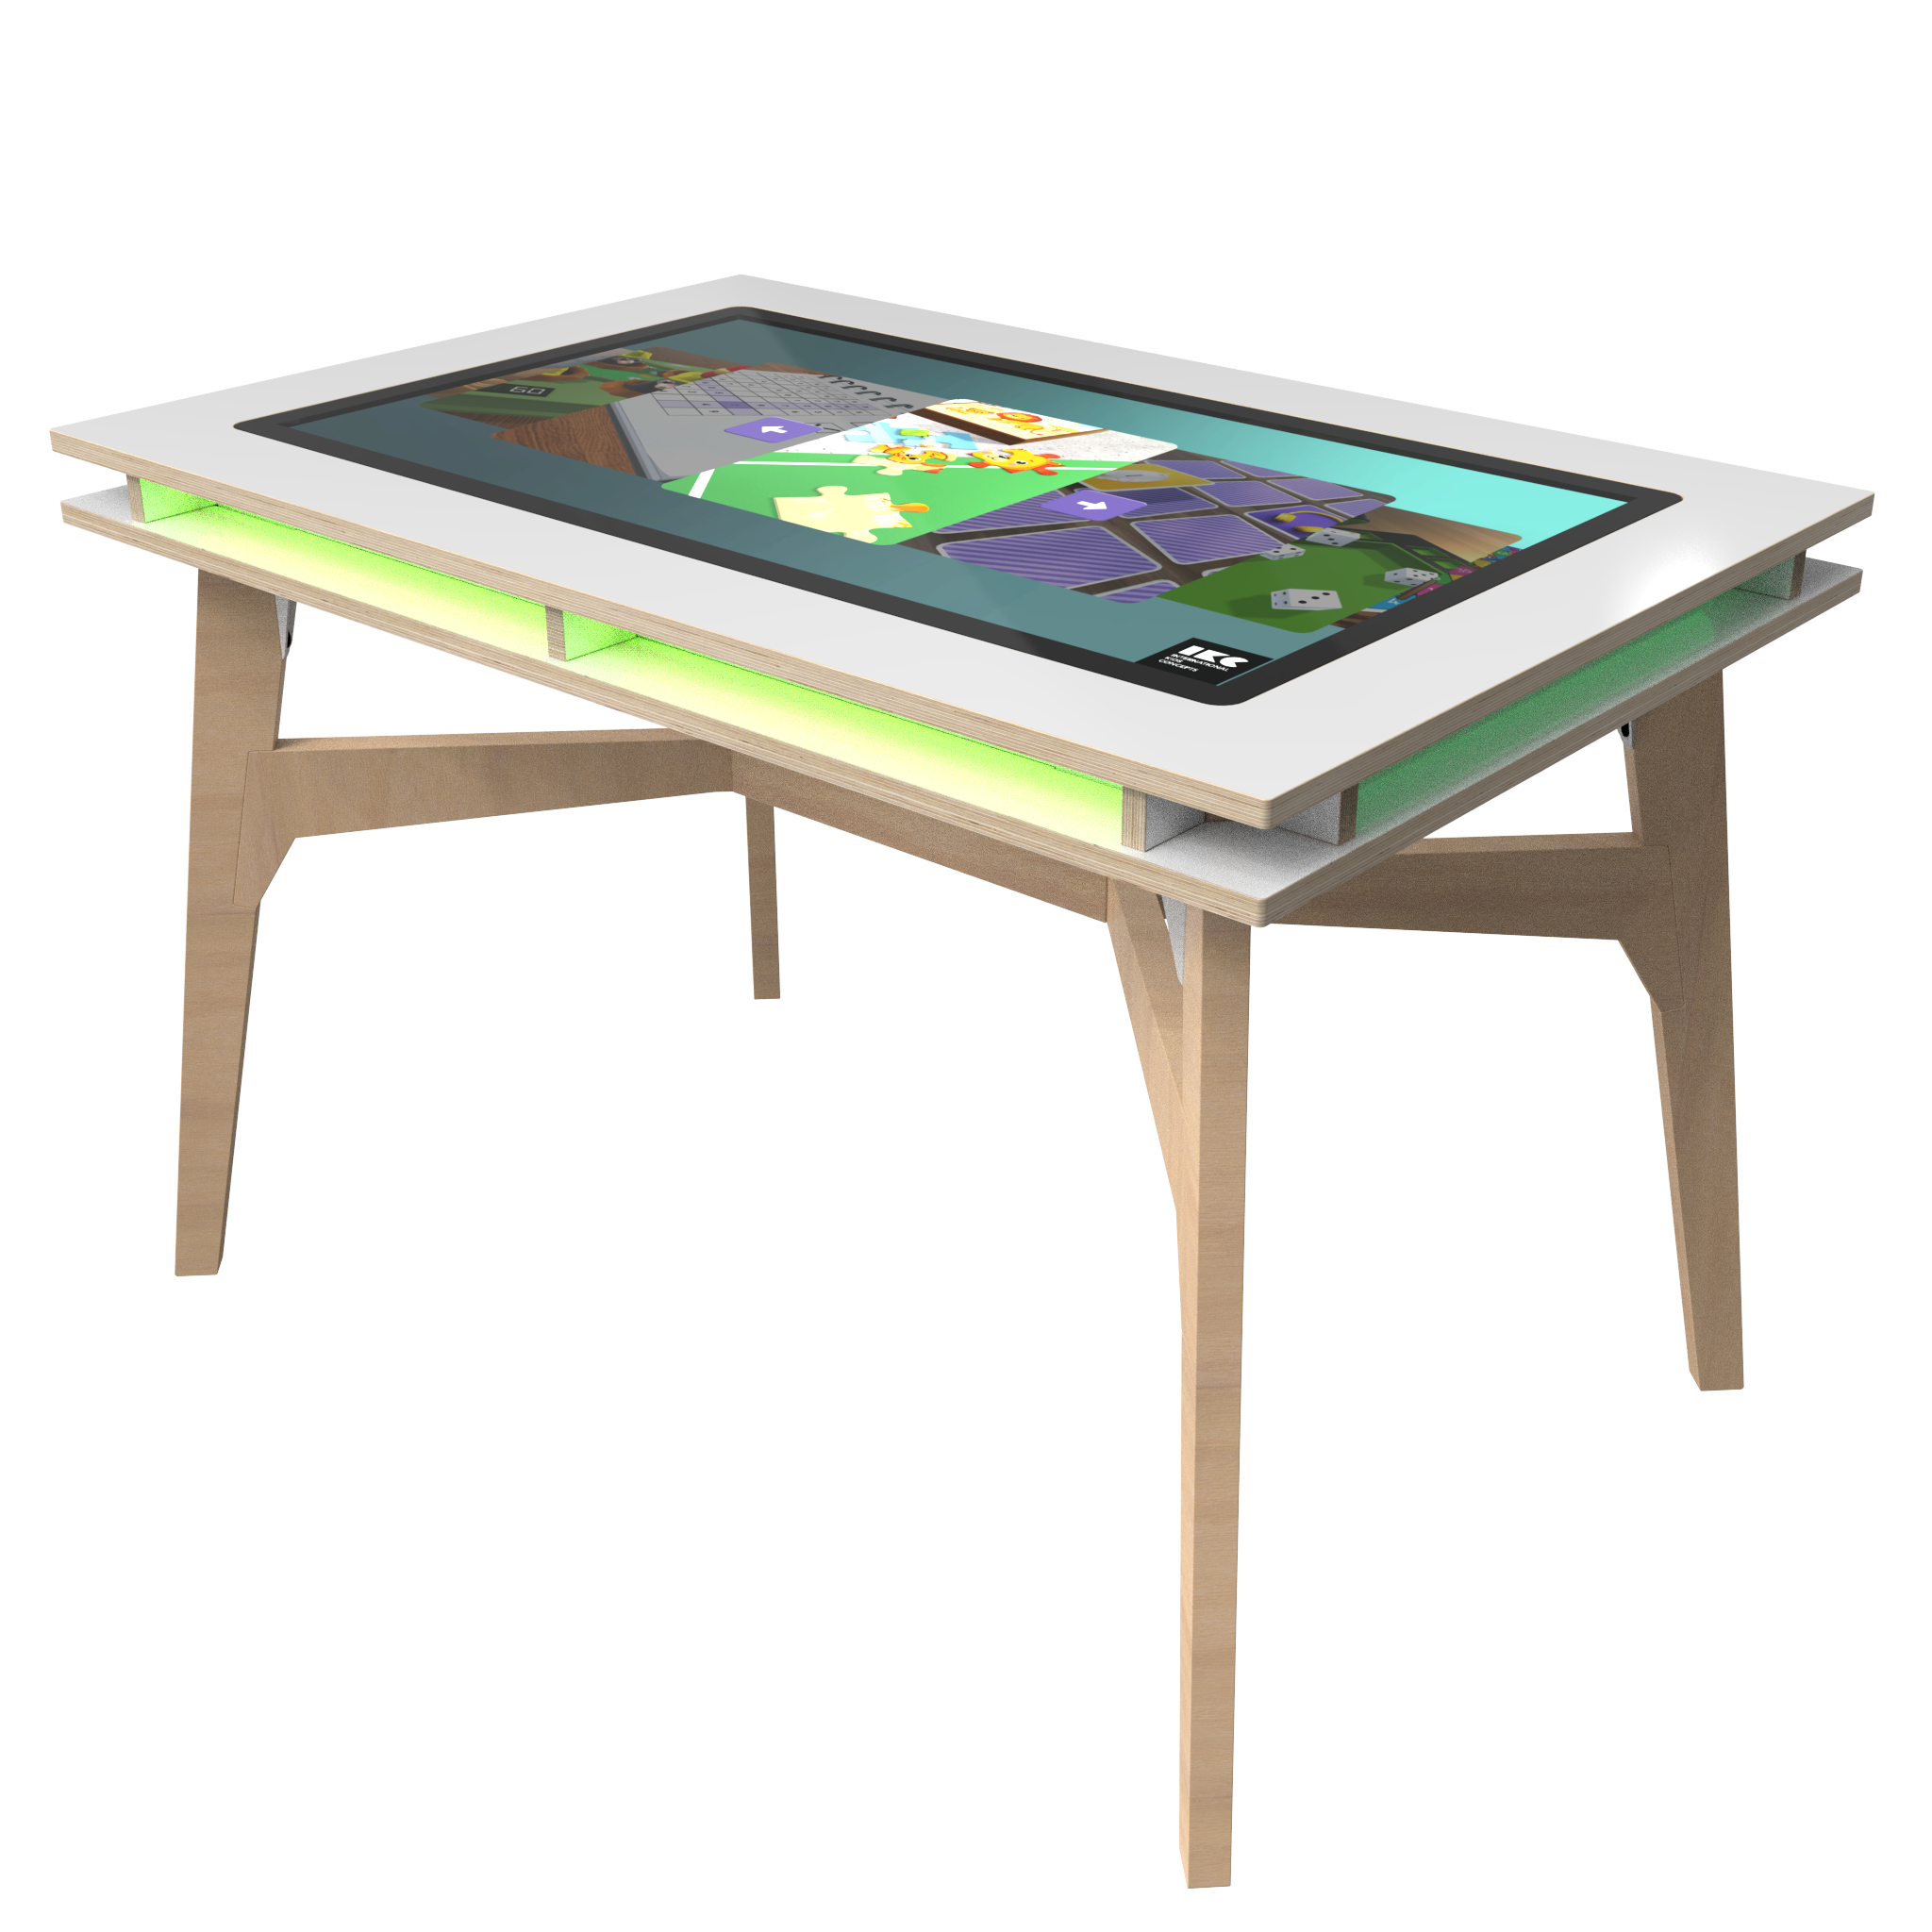 IKC collectie I One 4 All Play table, Speelvermaak voor elk gezin in uw kinderhoek